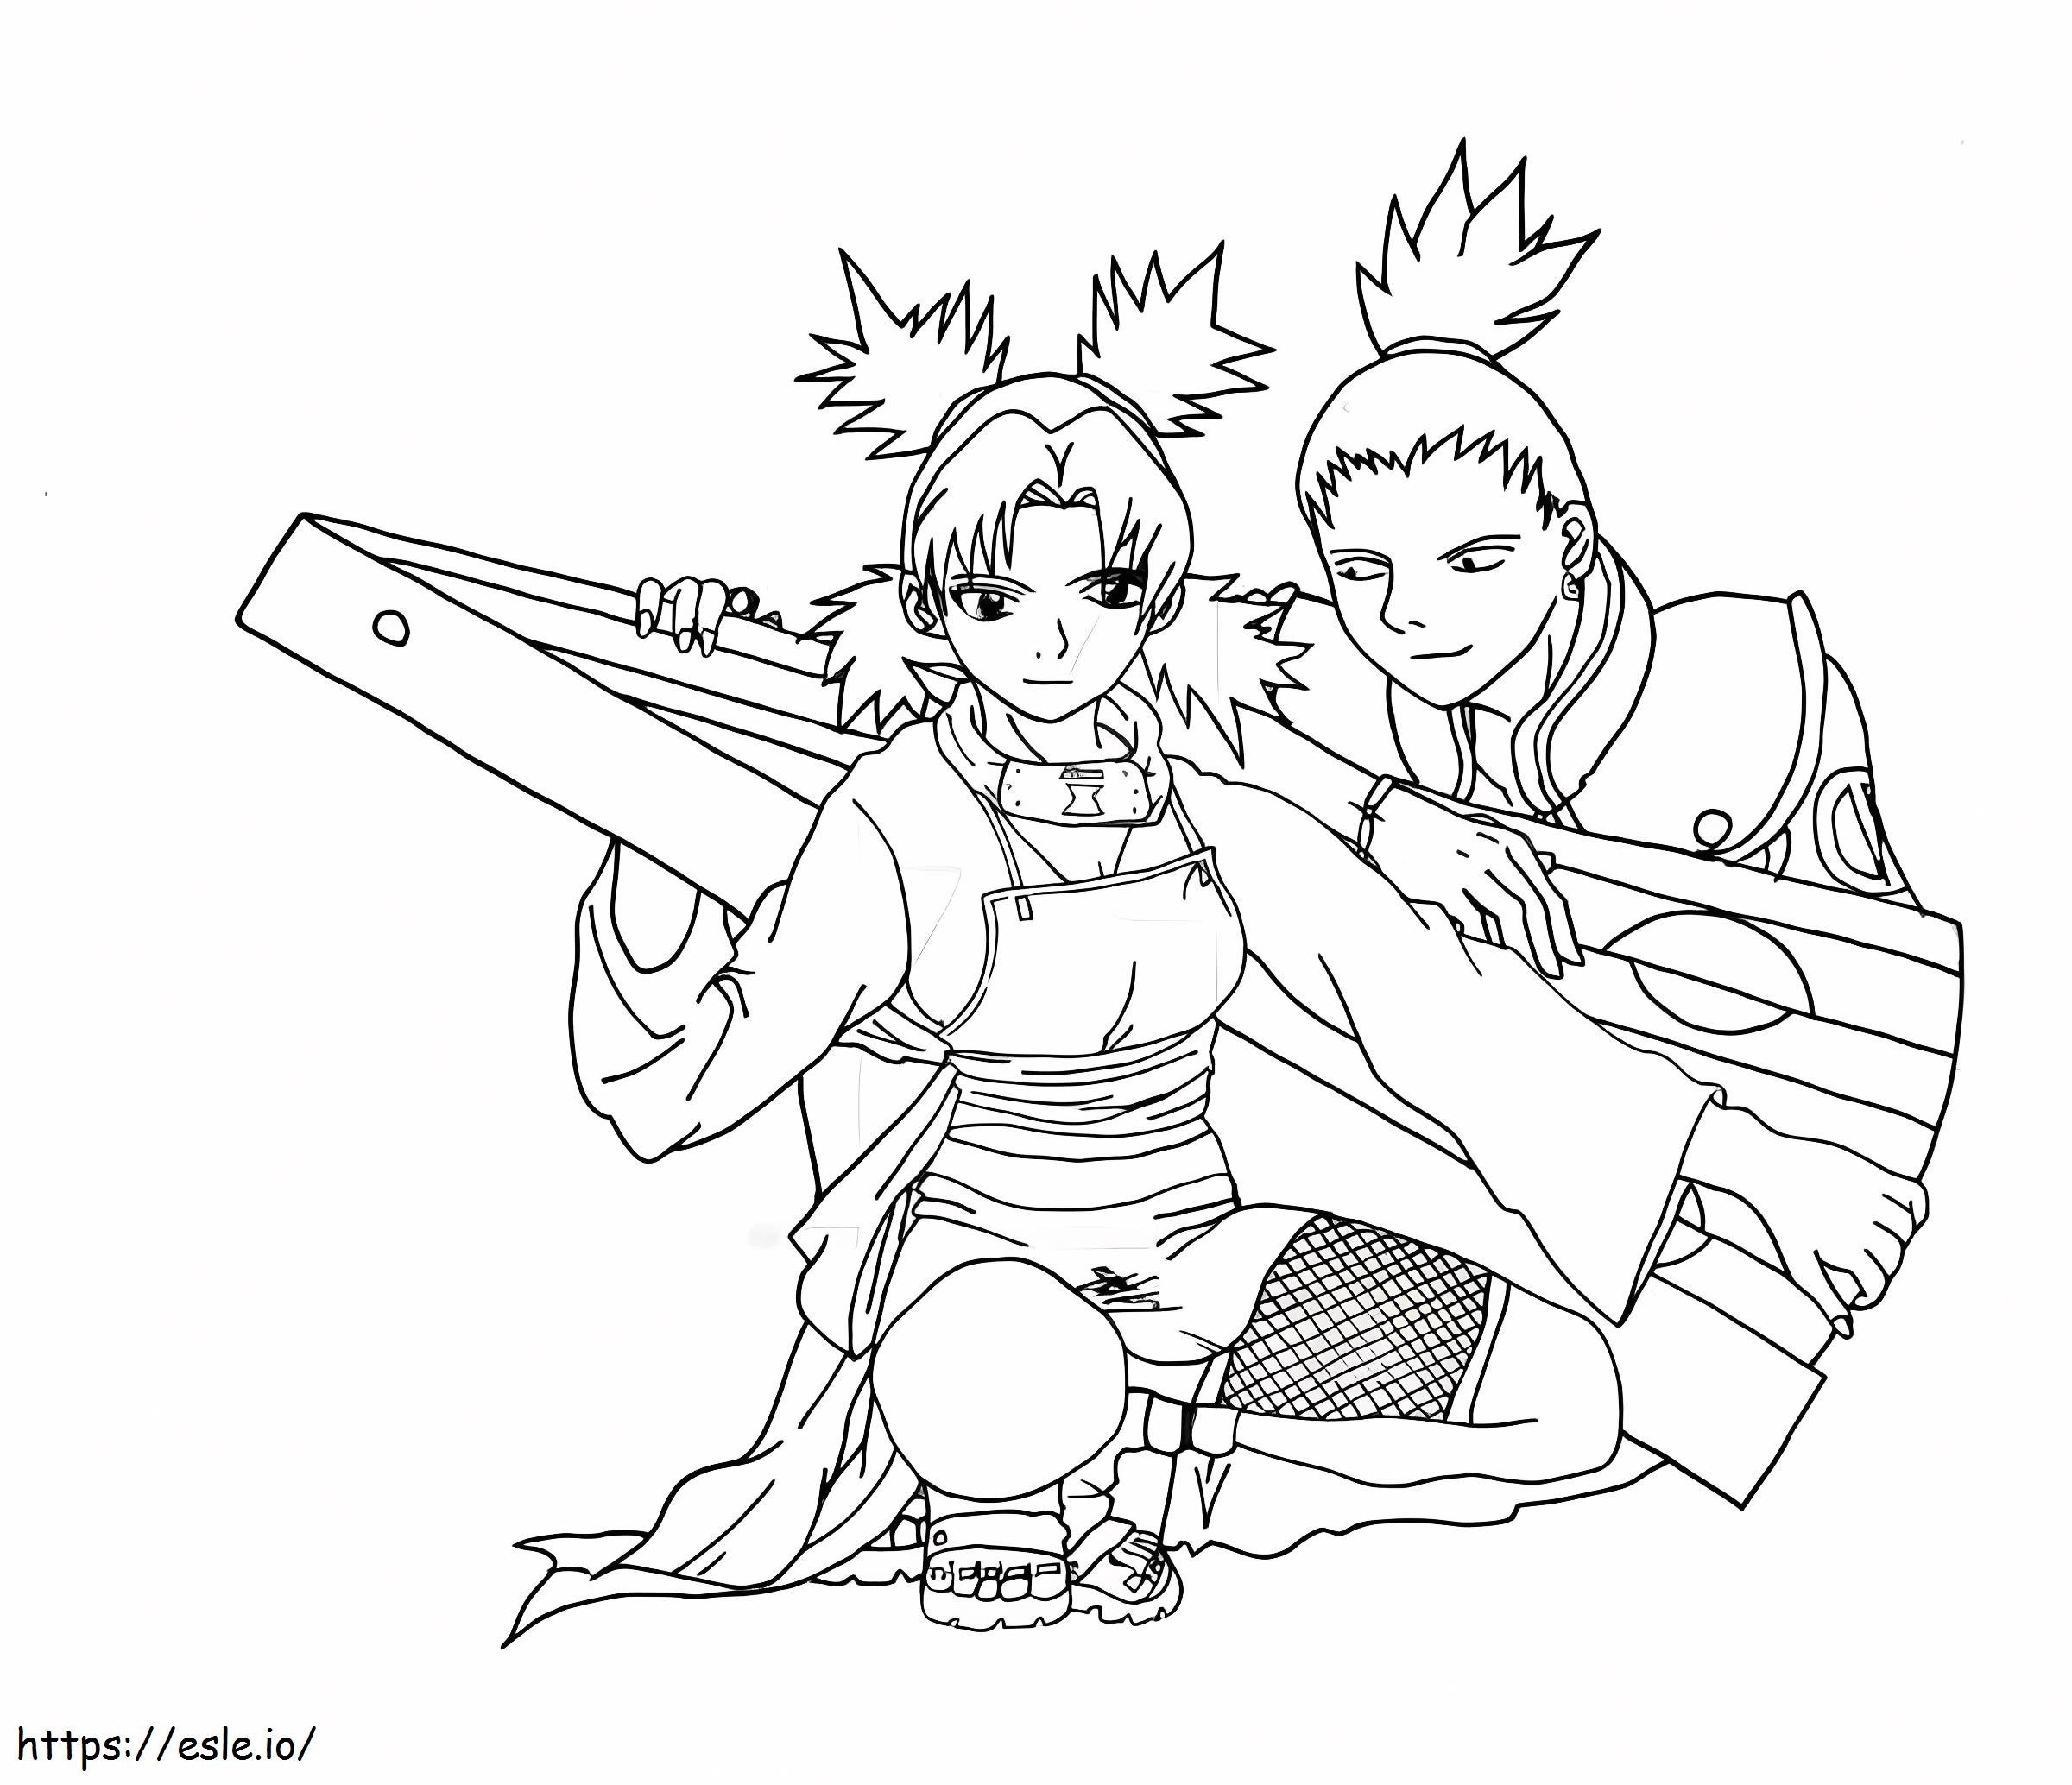 Desenhando Shikamaru e Temari para colorir